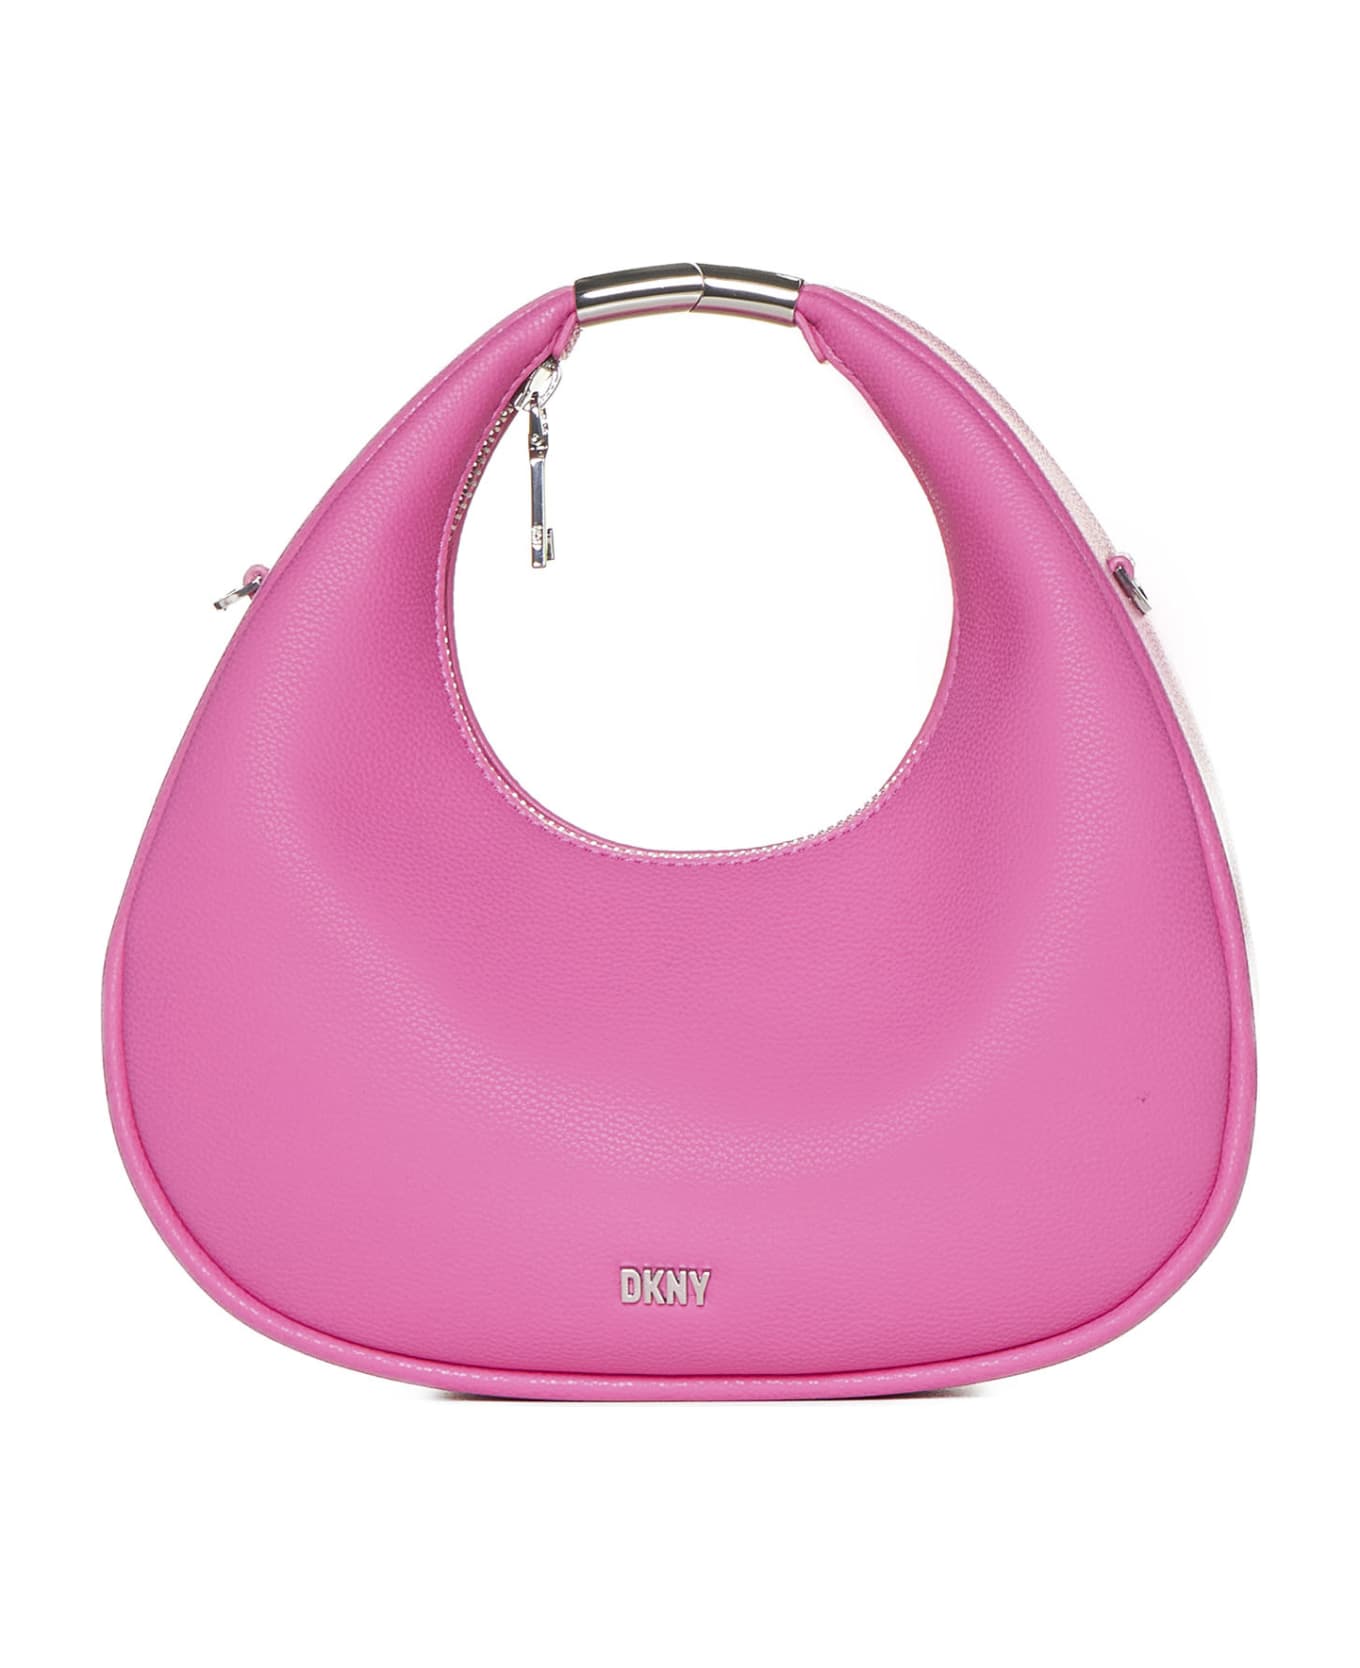 DKNY Shoulder Bag - Hot pink